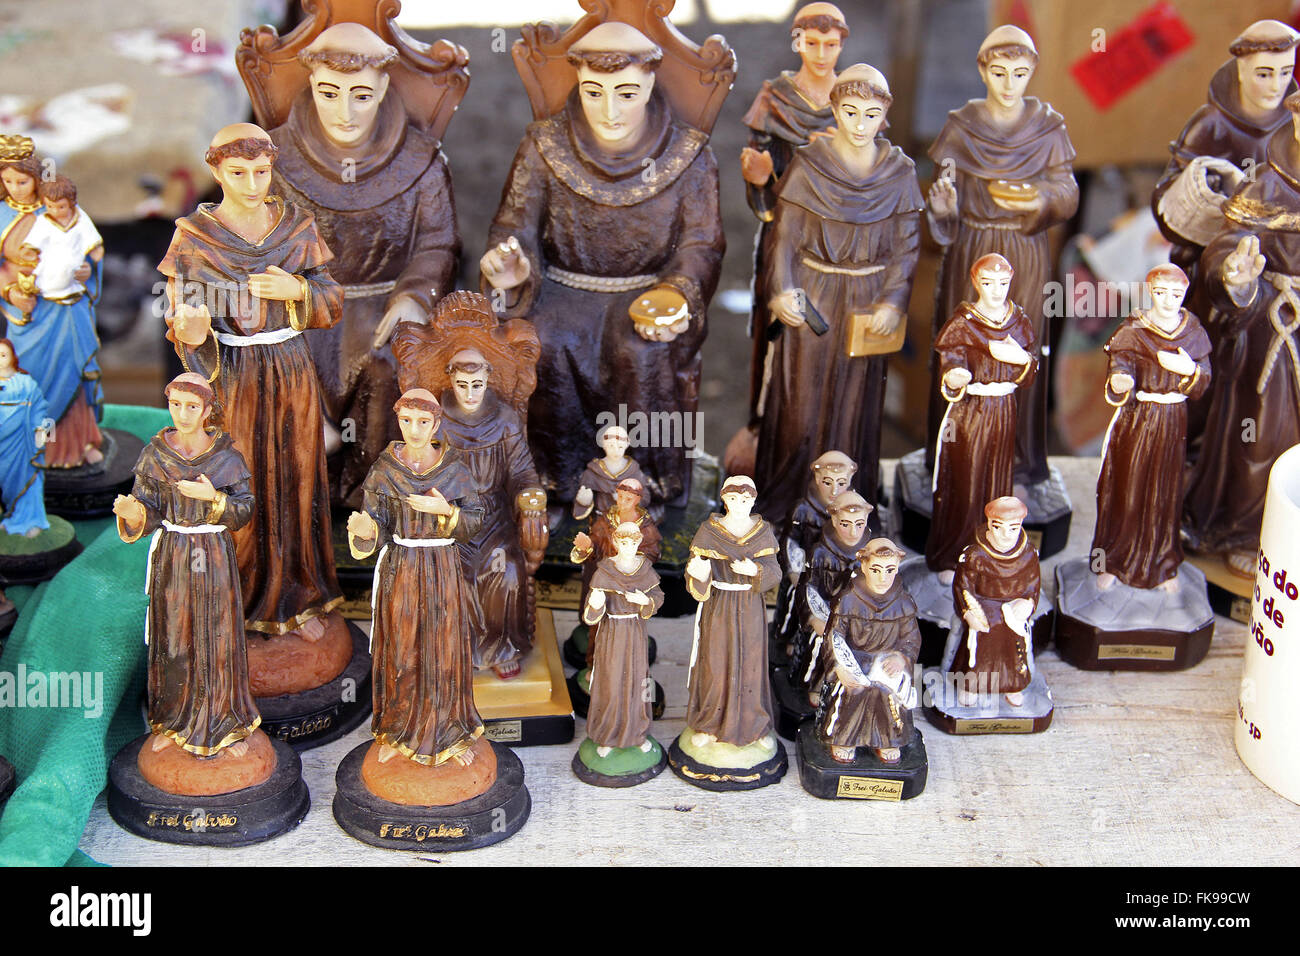 Miniaturen-Verkauf am Santuario Frei Galvao in der Stadt Guaratingueta Stockfoto